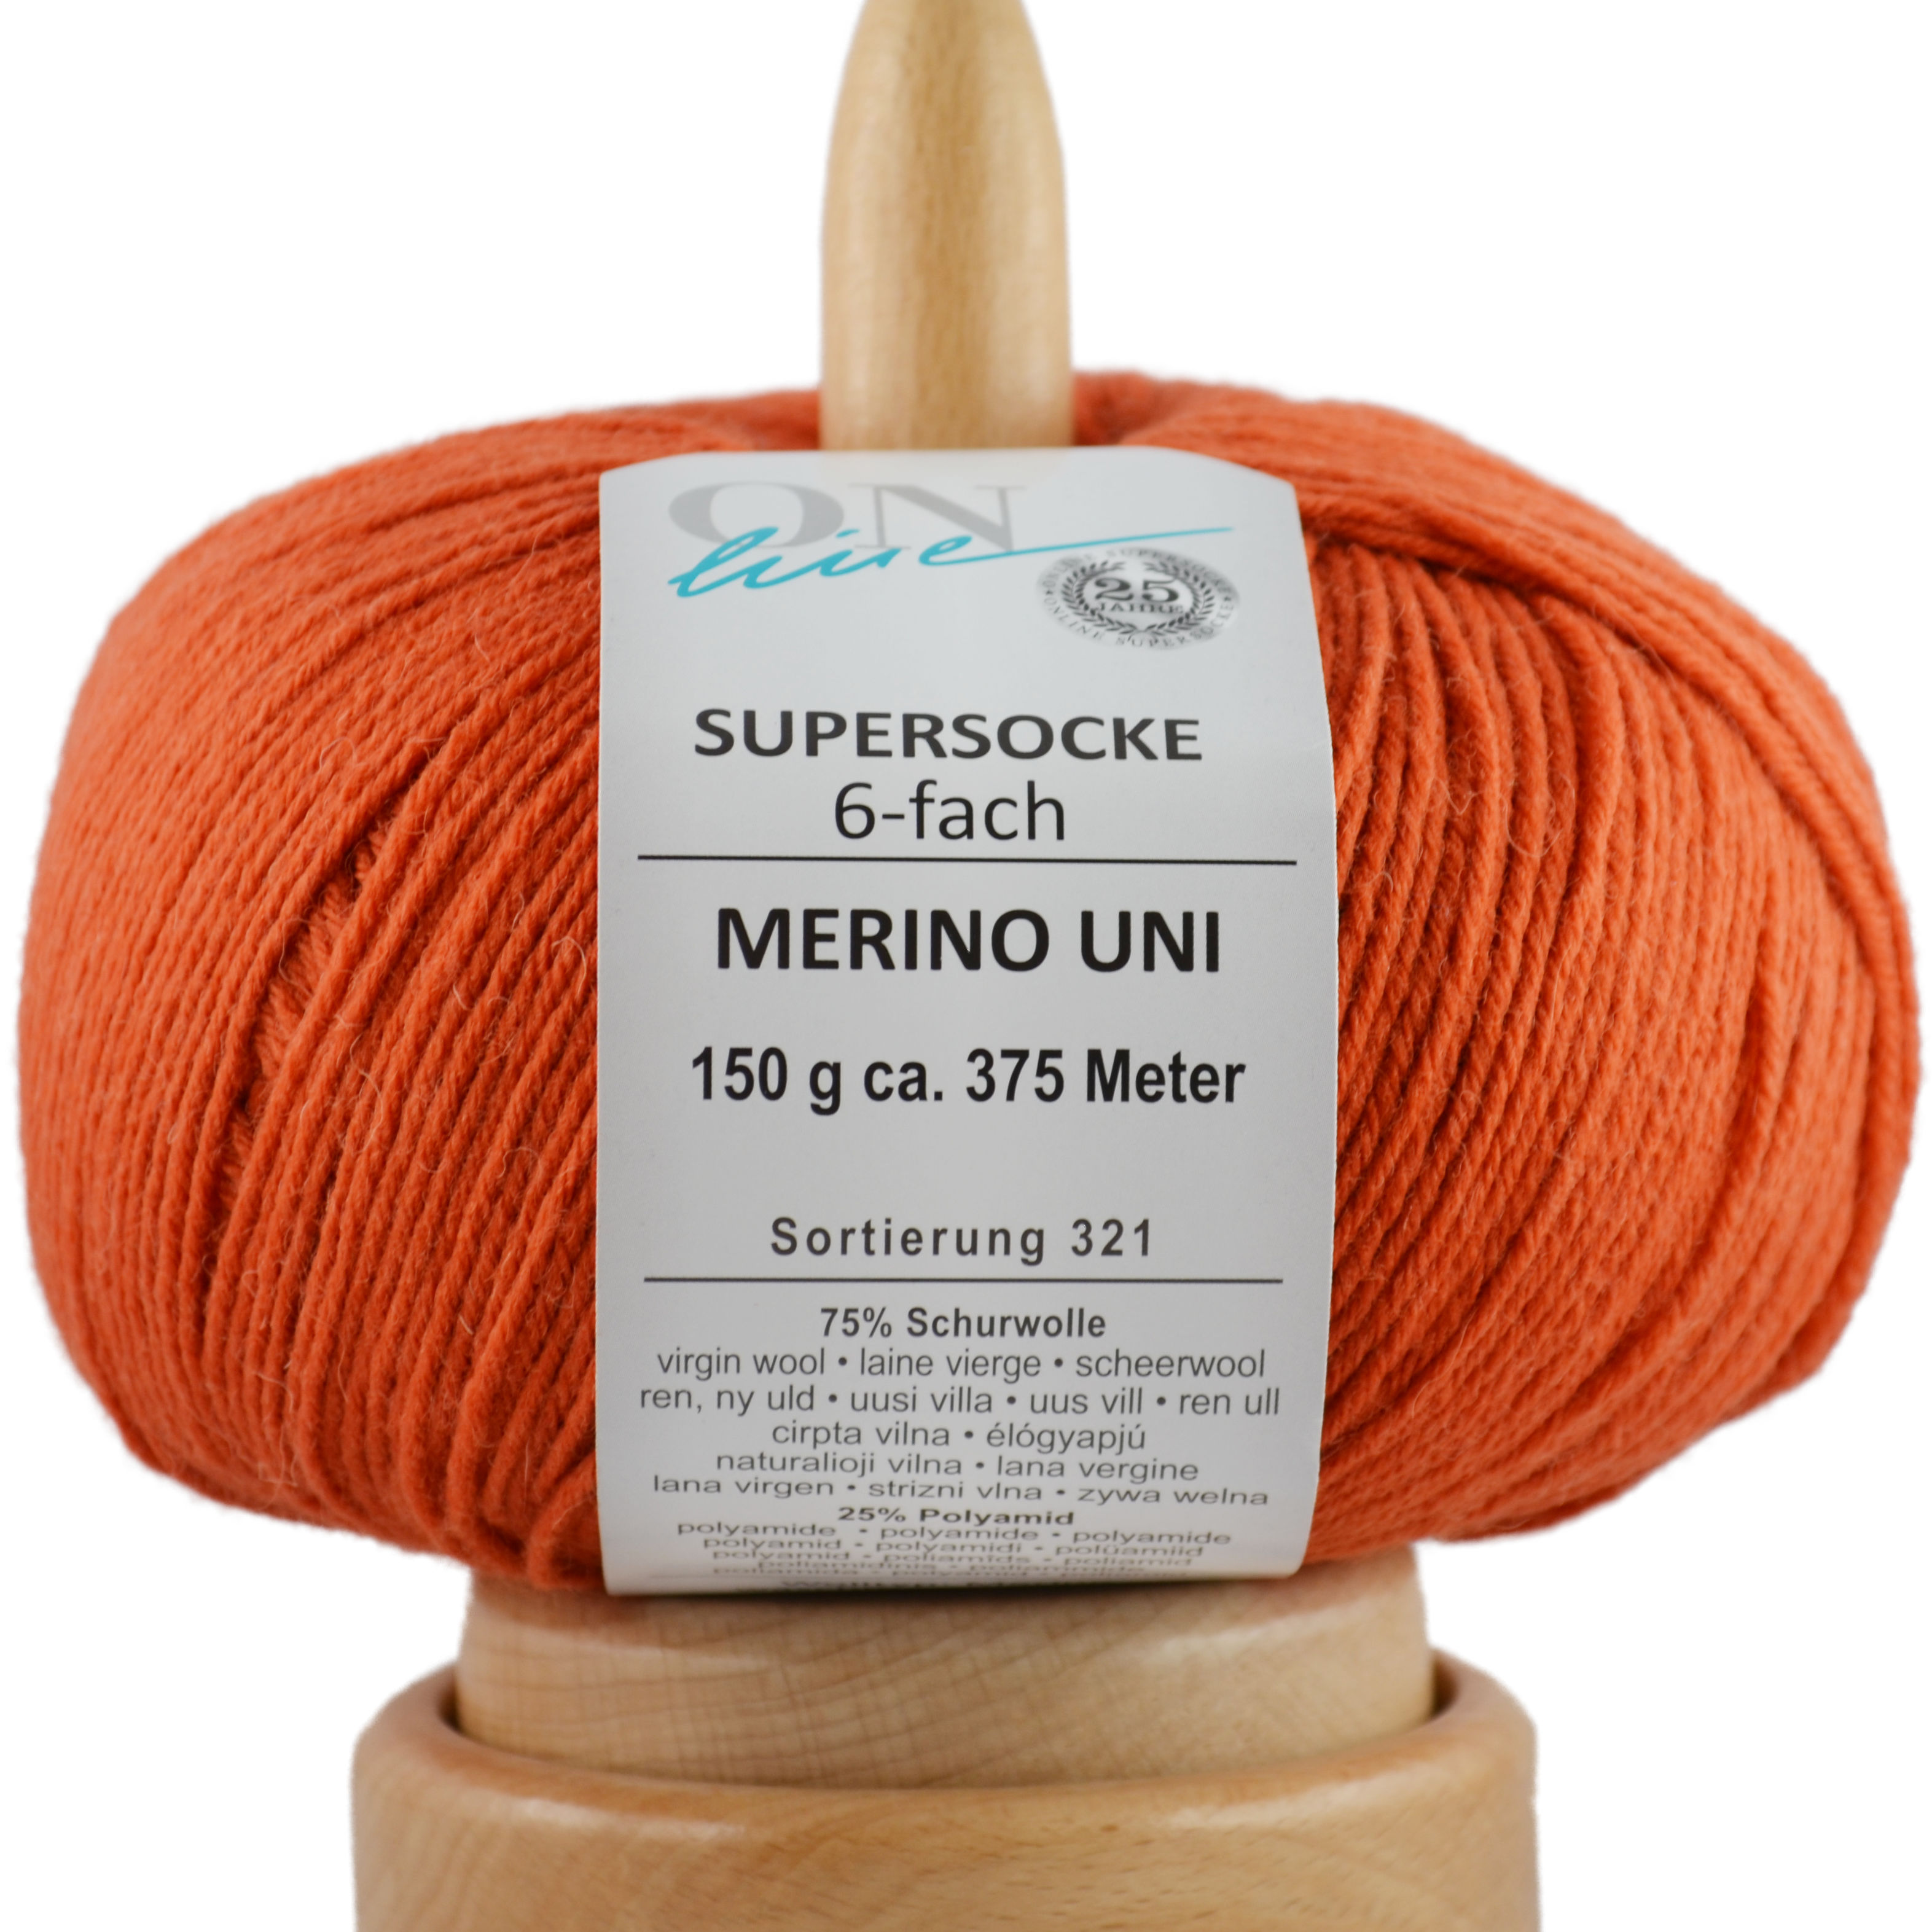 Supersocke 6-fach Merino Uni von ONline Sort. 321 - 5003 - rost